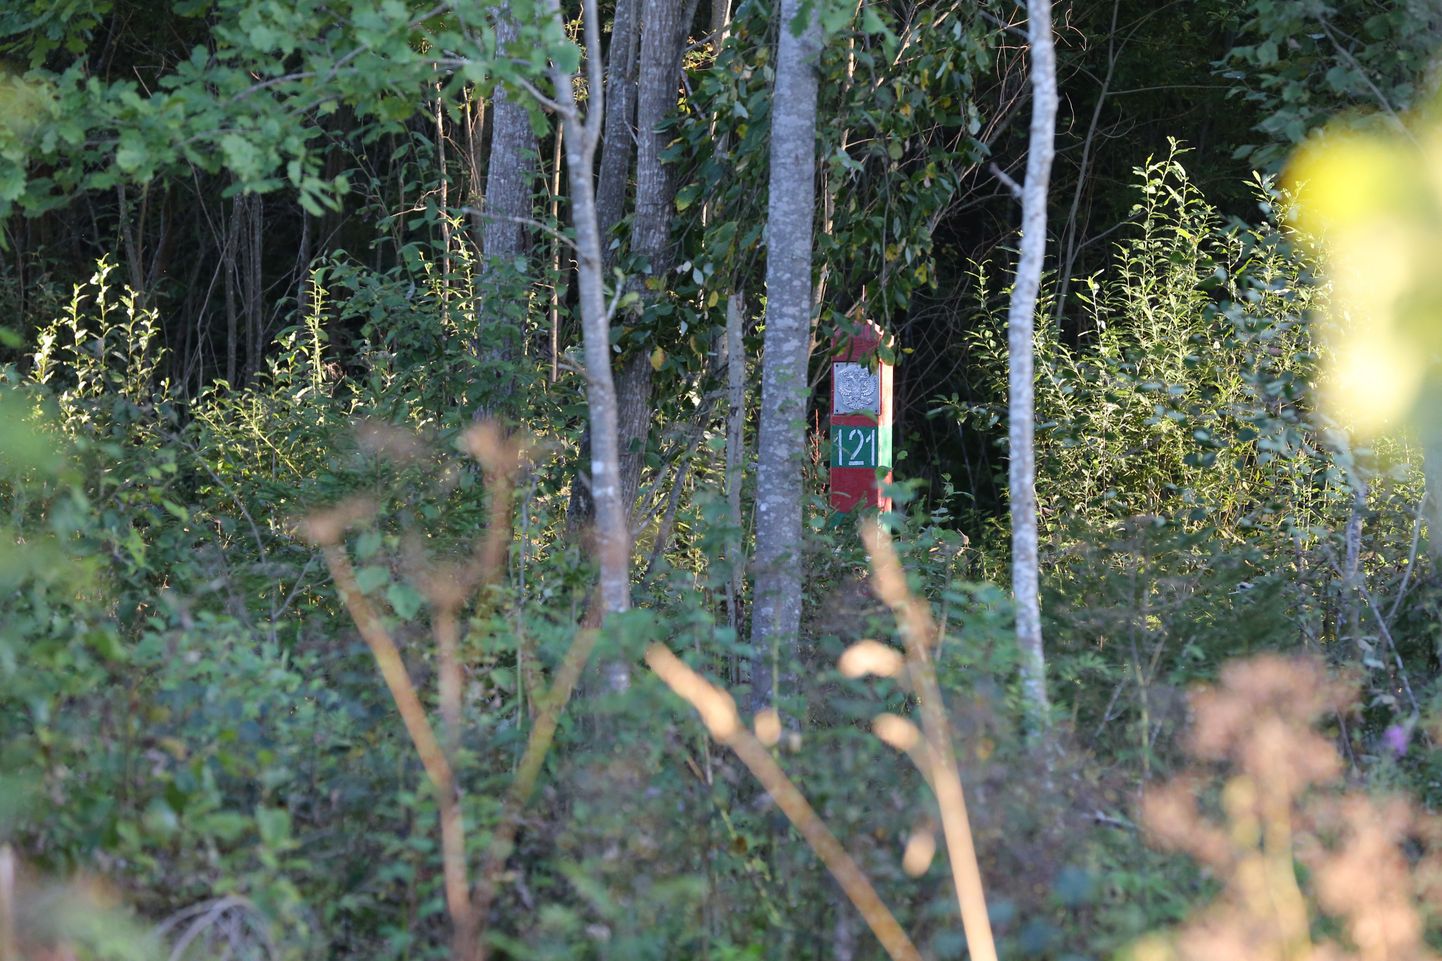 Koht Luhamaa piiripunkti läheduses, kus rööviti Eesti kaitsepolitseinik.